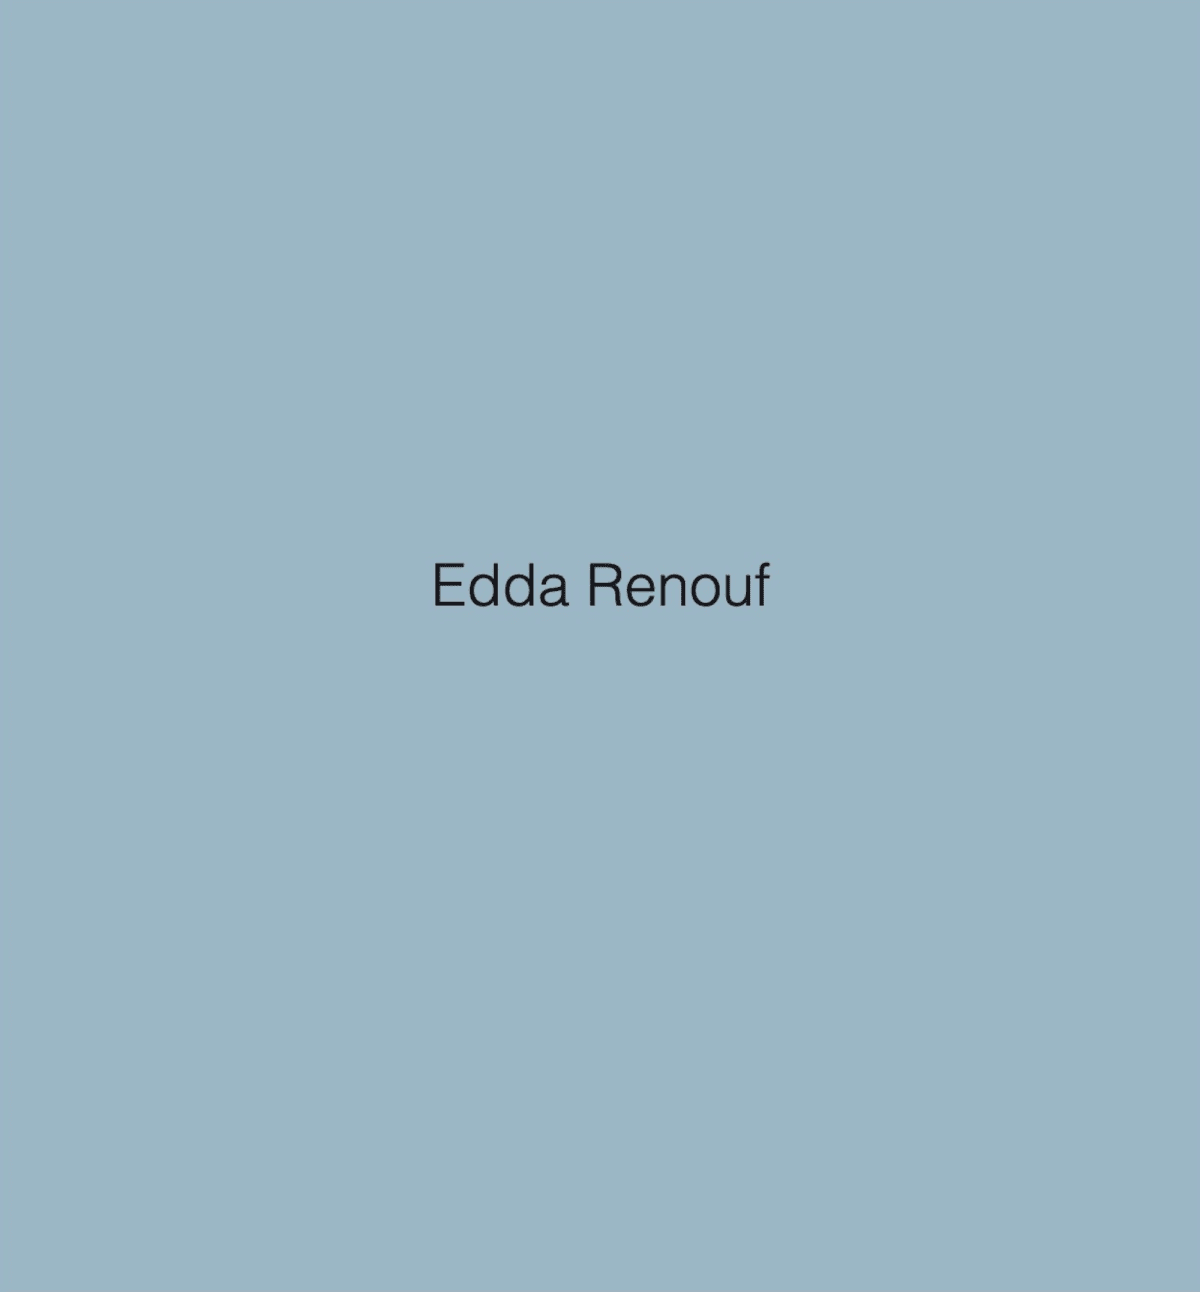 Edda Renouf